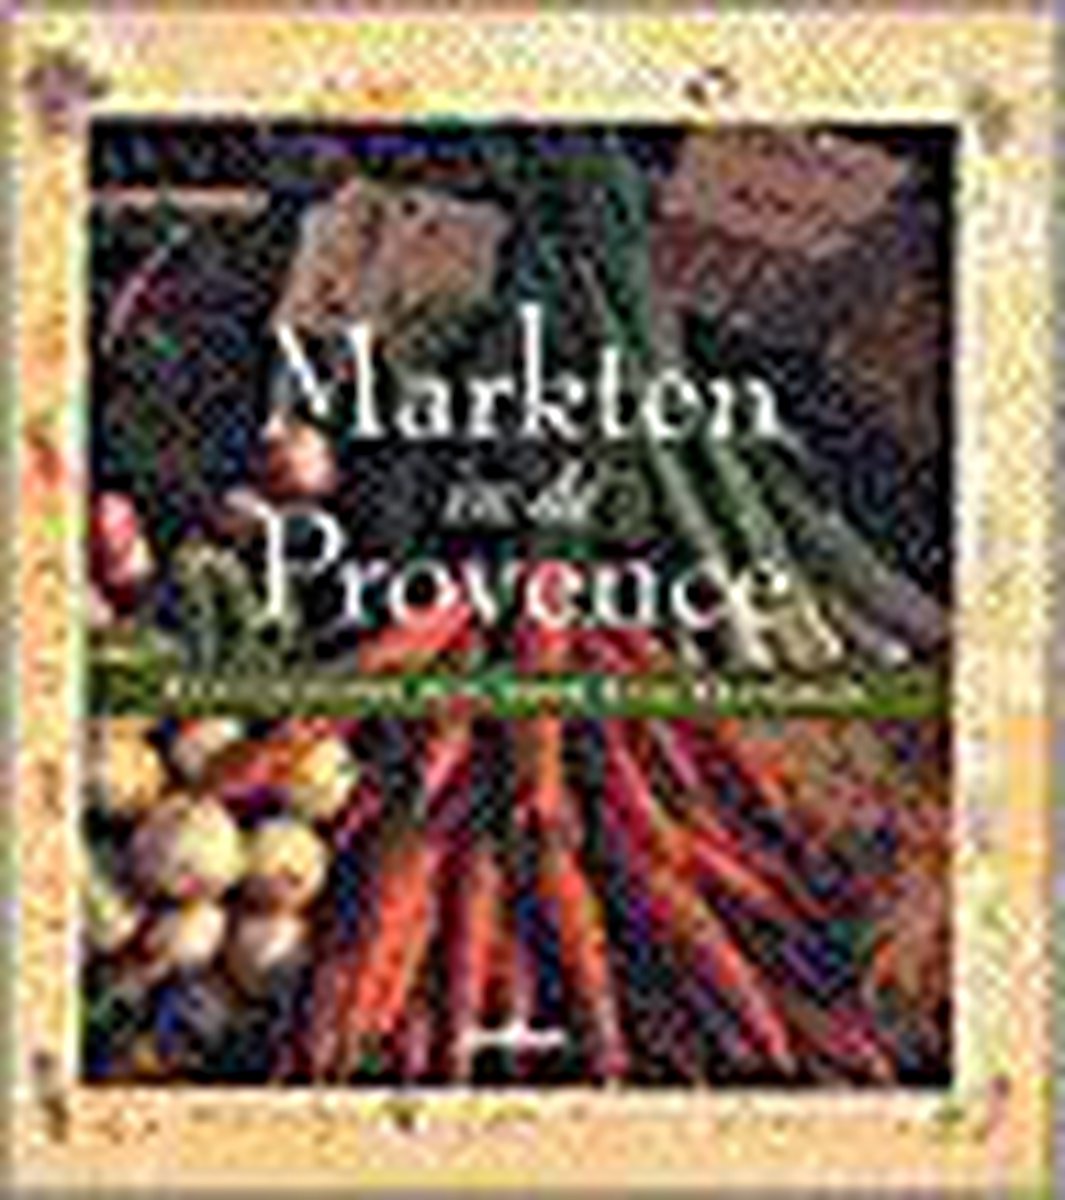 Markten In De Provence